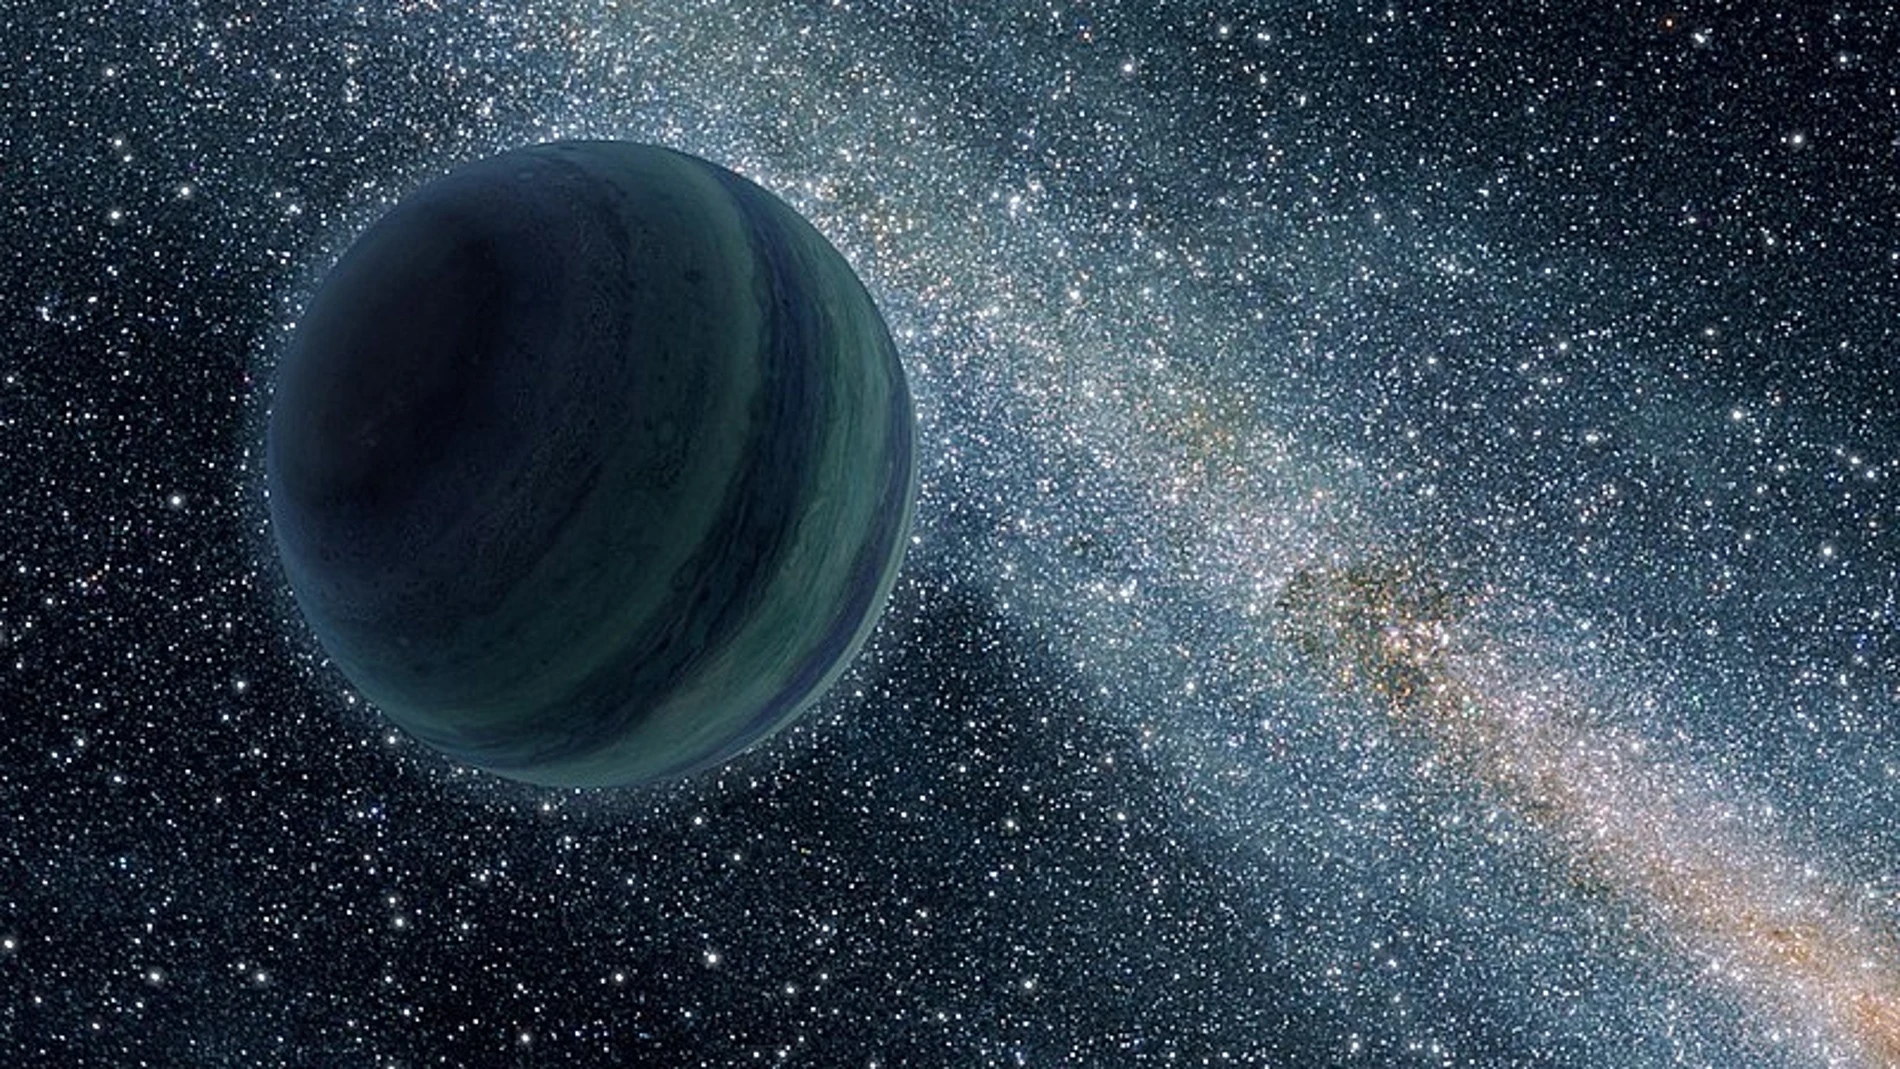 Representación artística de un planeta gigante gaseoso eyectado al espacio interestelar.